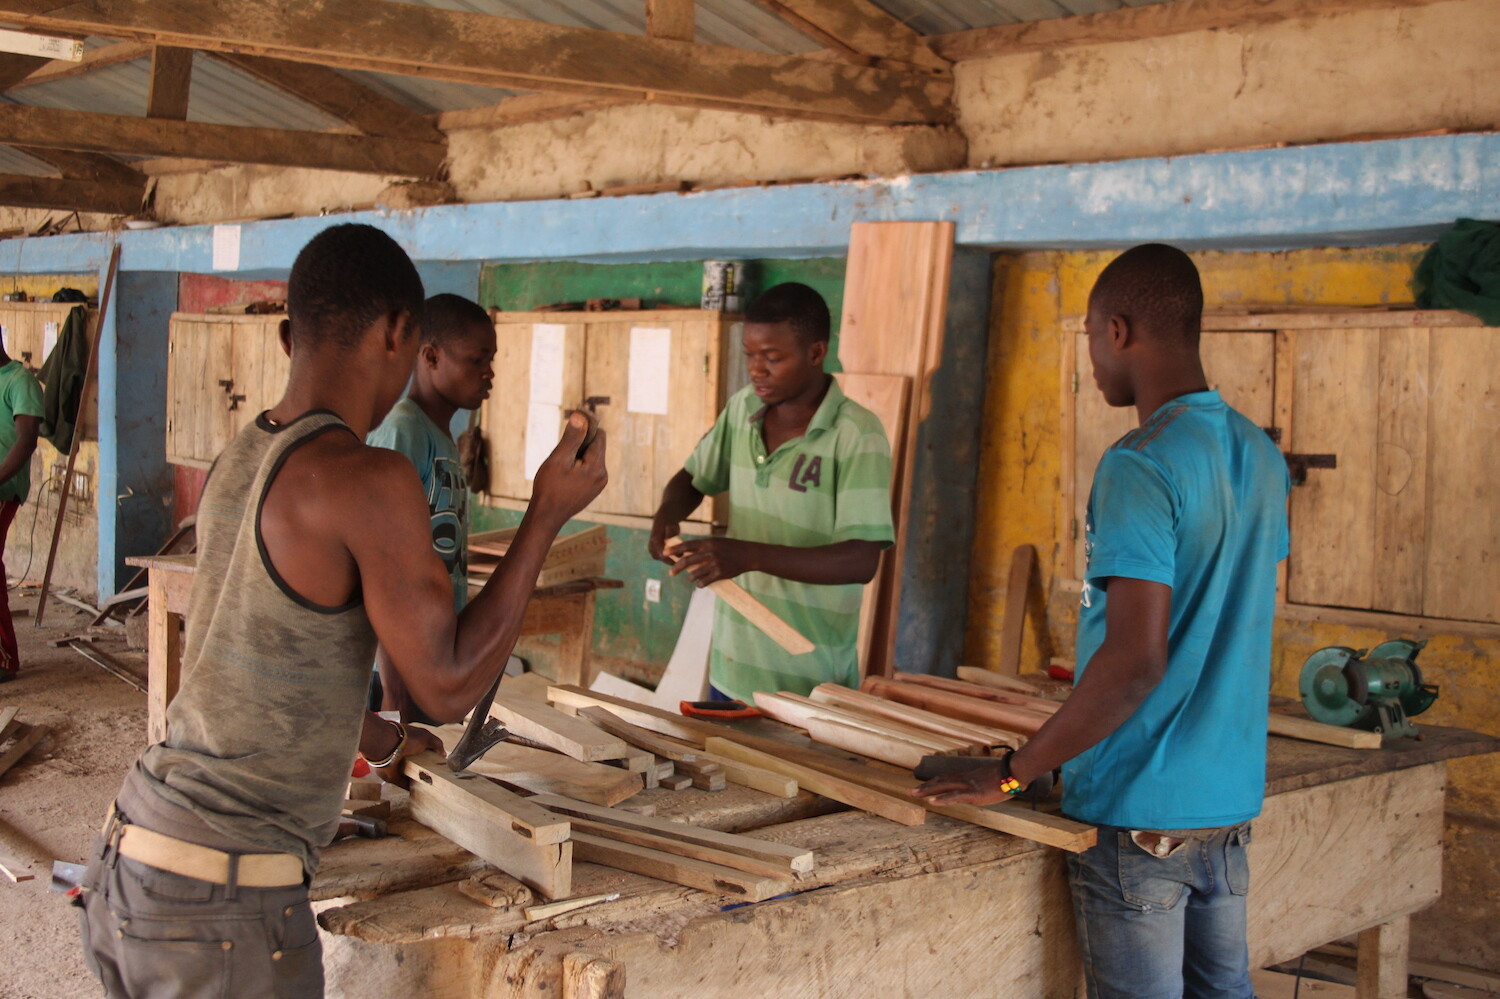 Togo ralf grubwinkler ausbildungszentrum 180410 rechte rgv14